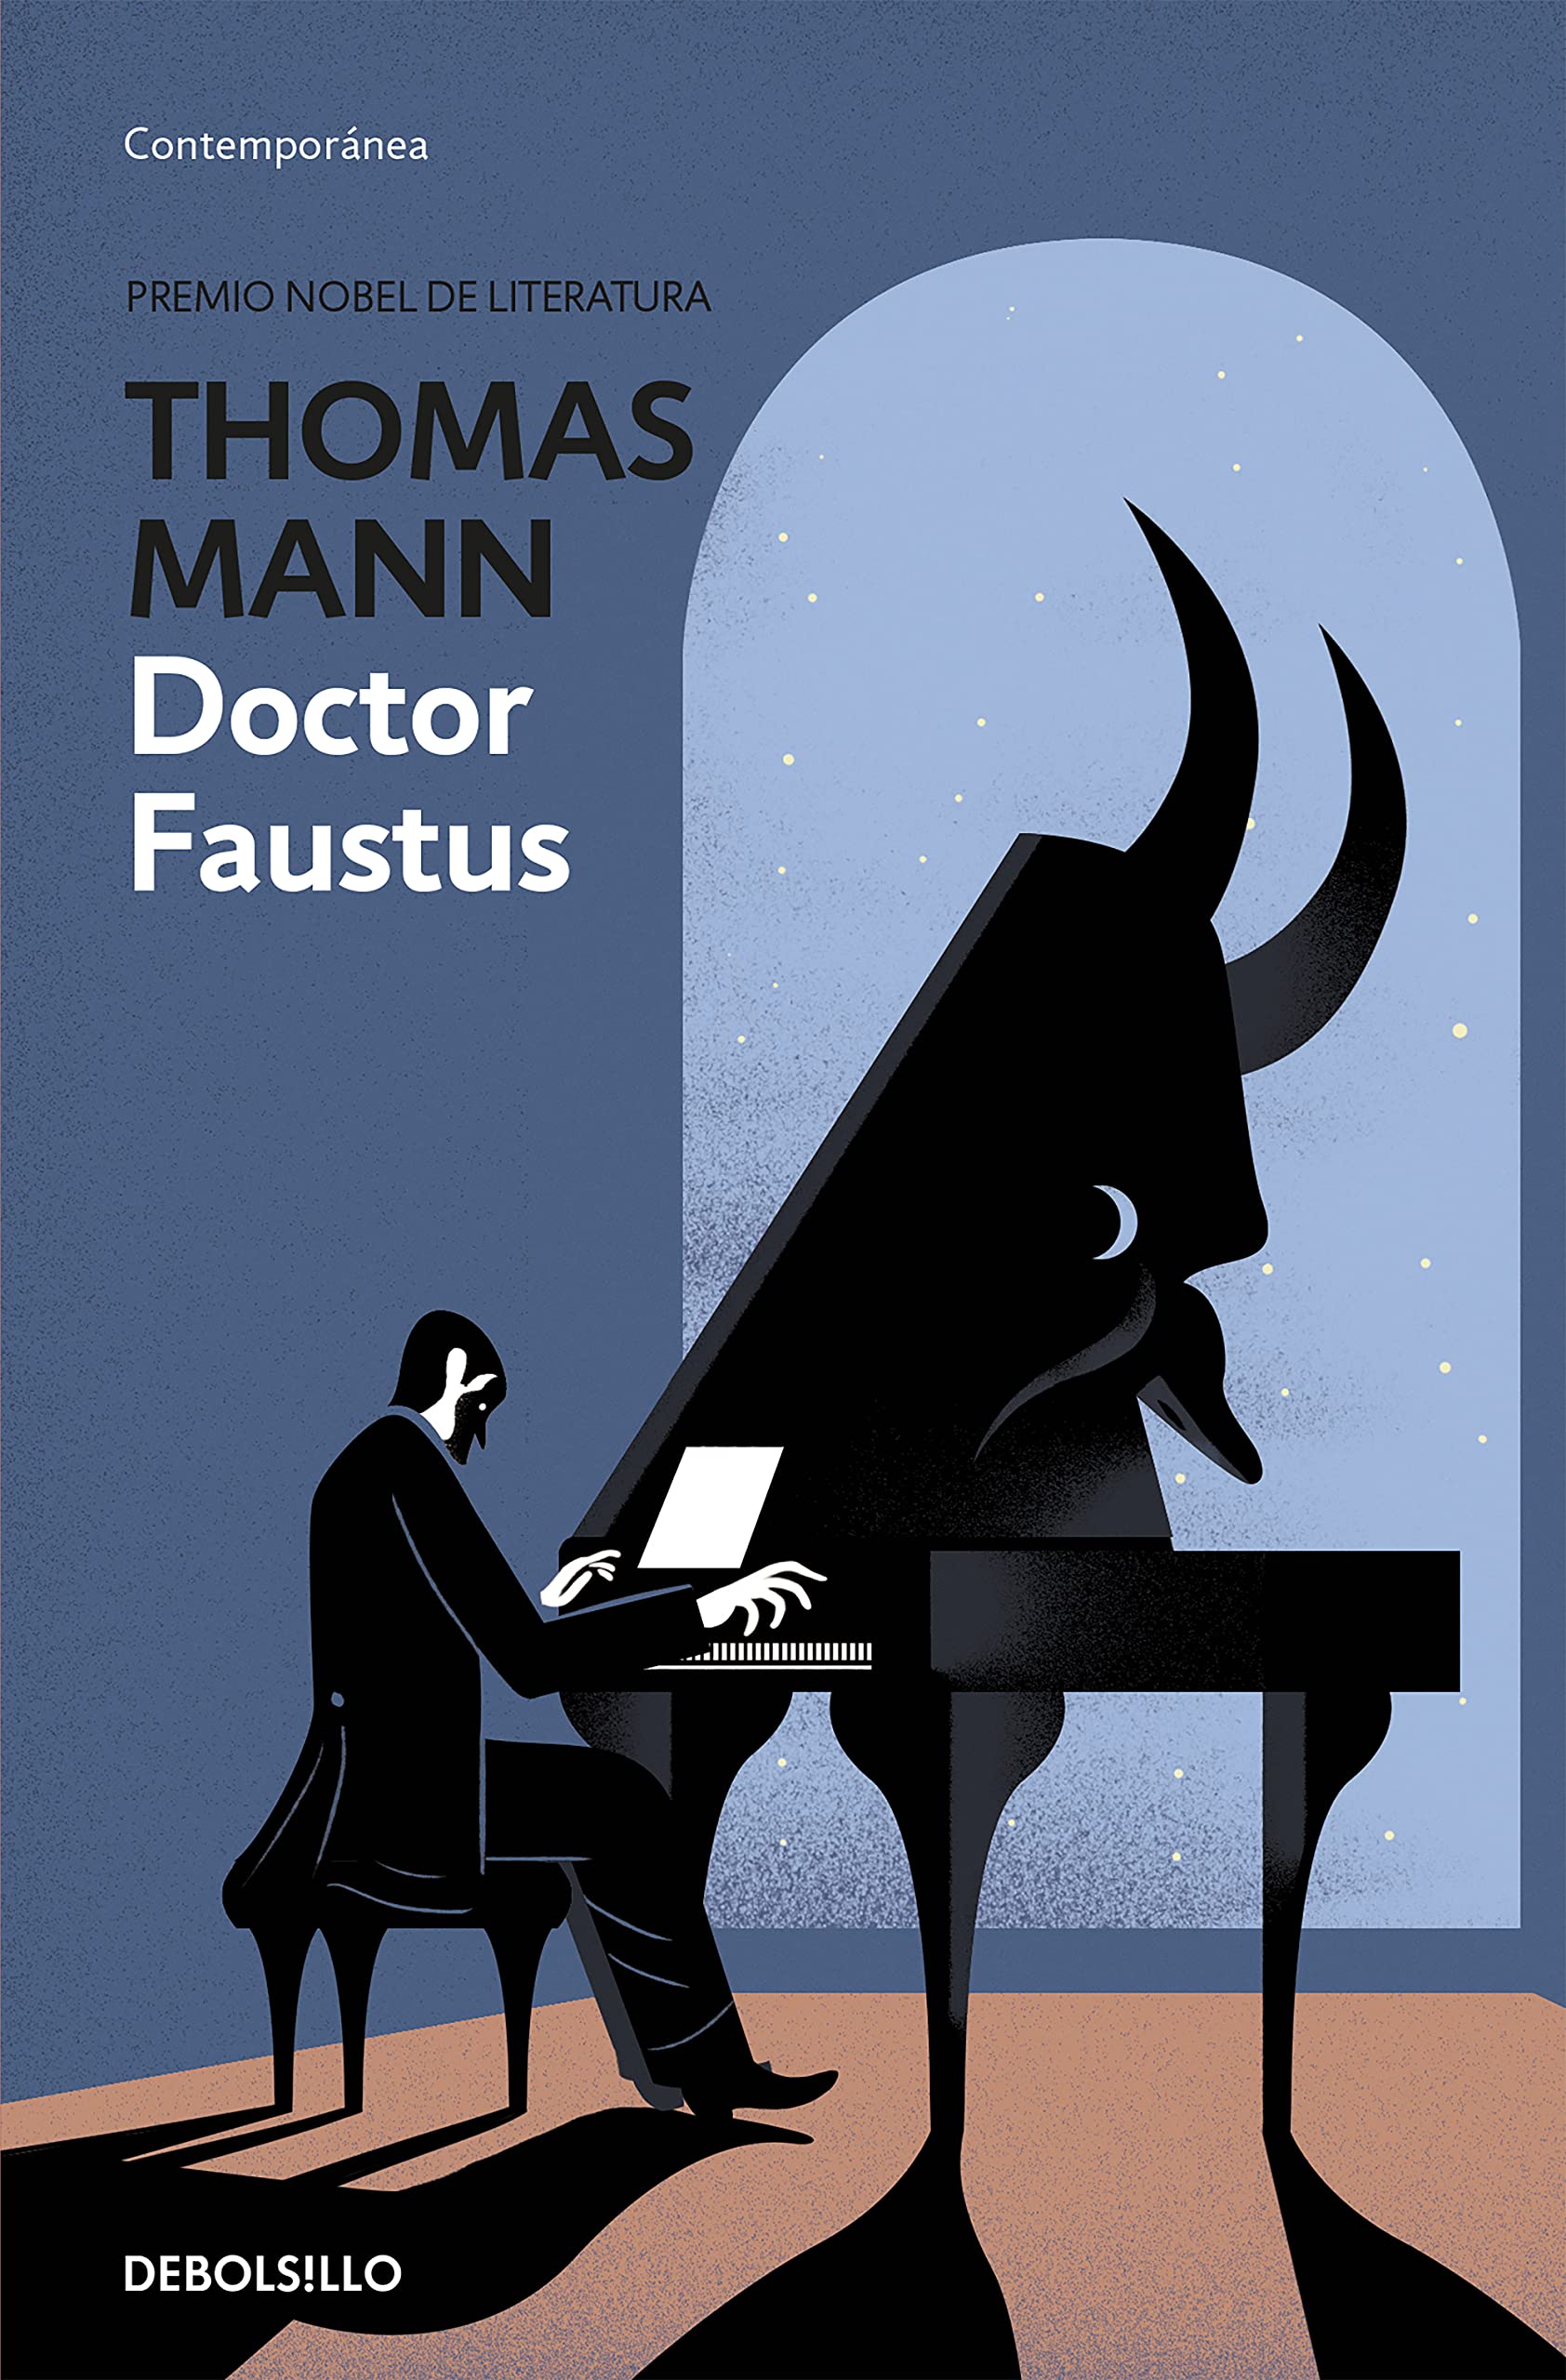 Zenda recomienda: Doctor Faustus, de Thomas Mann